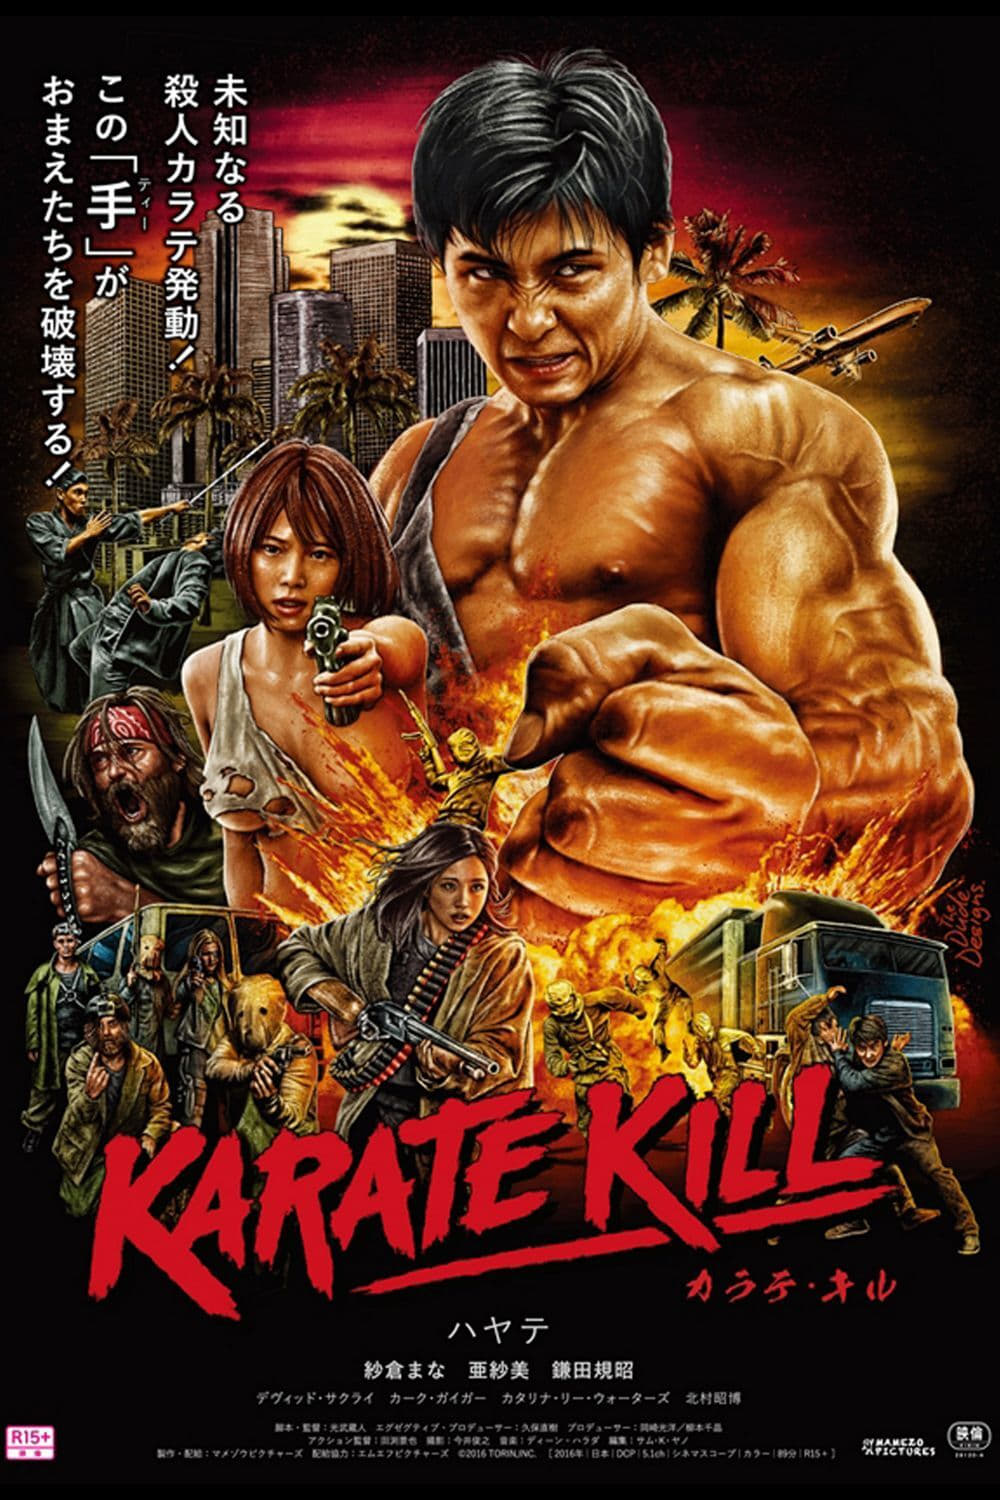 Karate Kill  2016